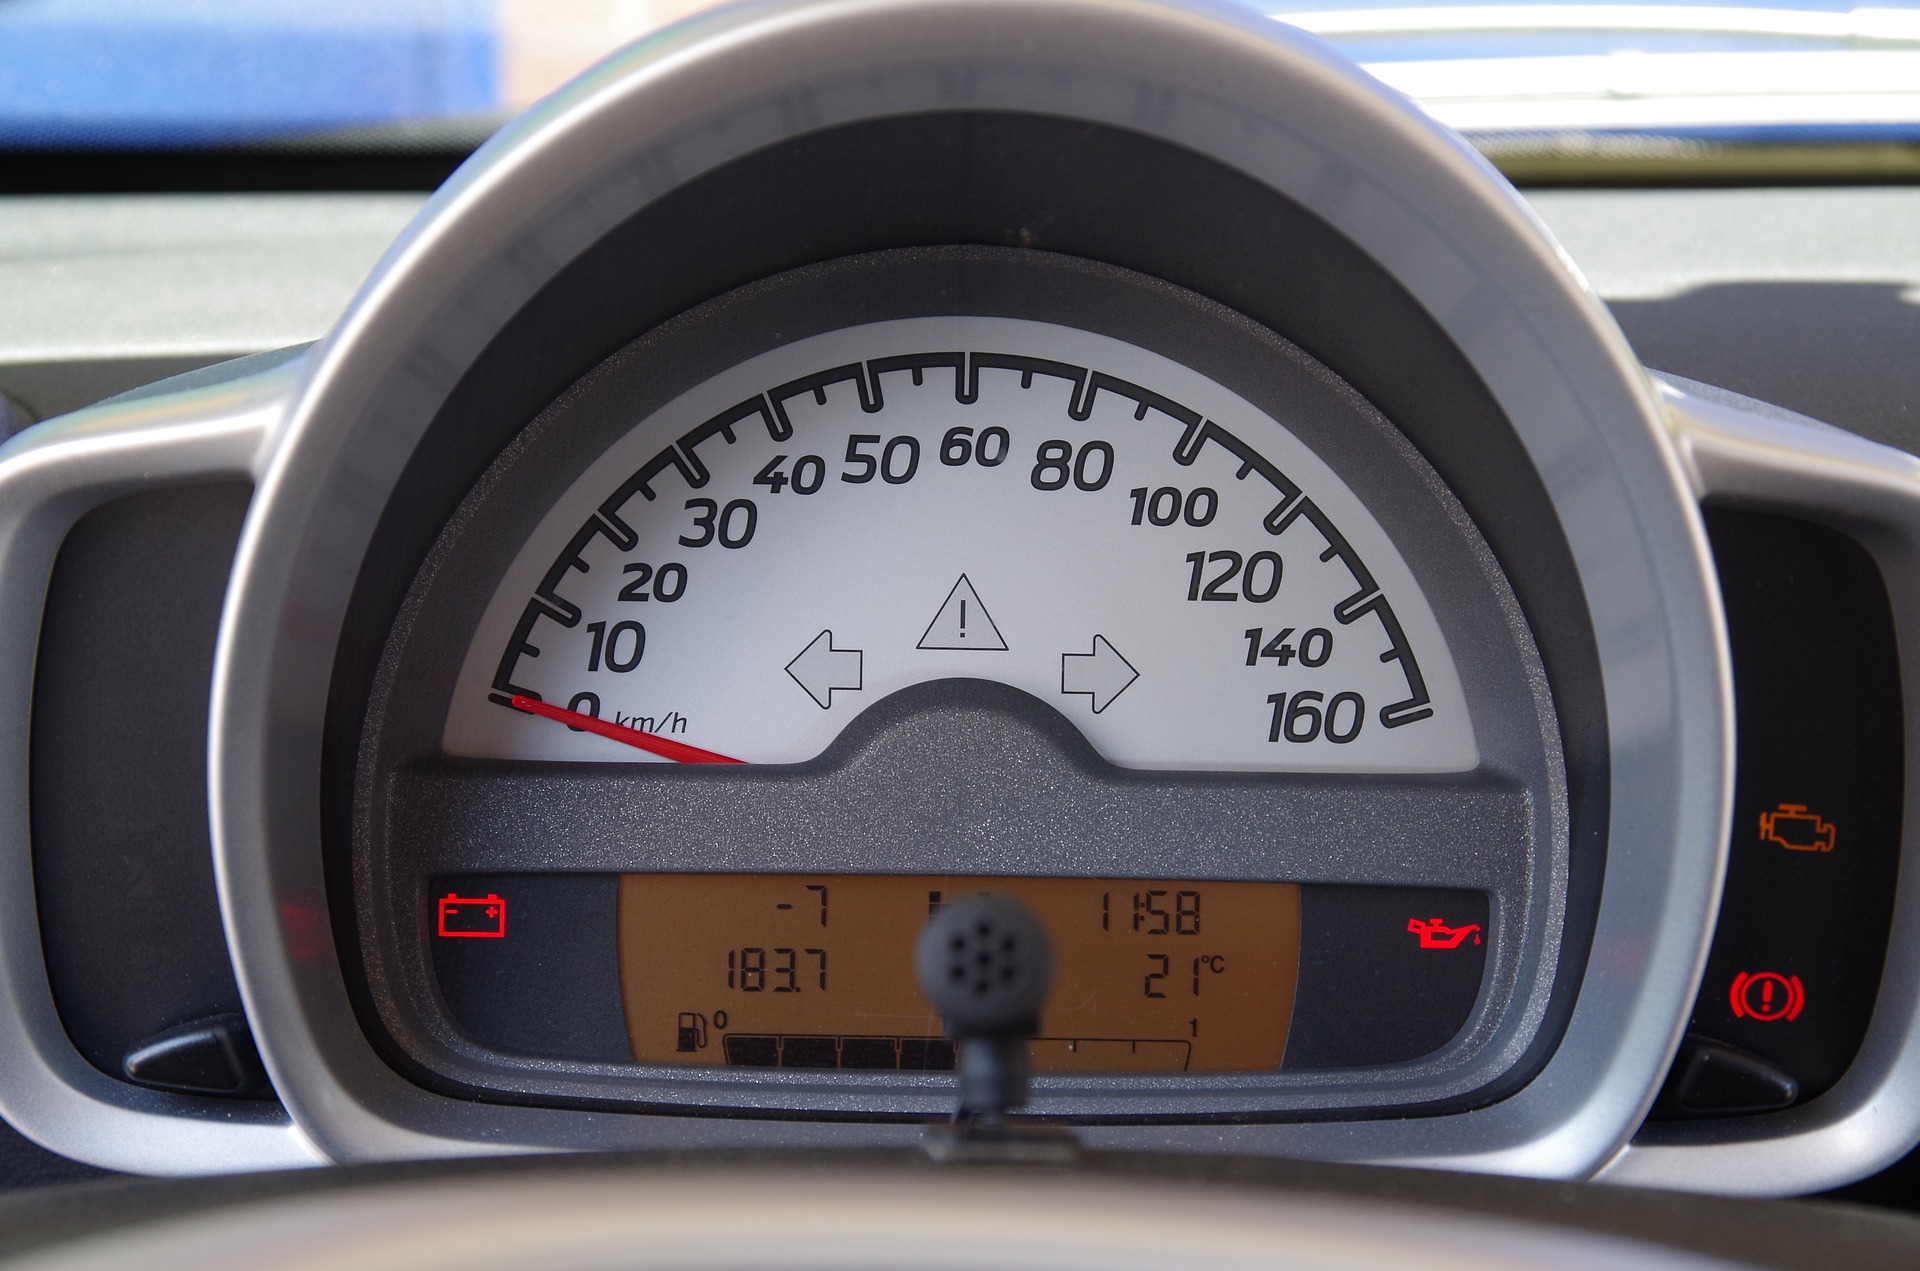 Kontrollleuchten und Warnsignale im Auto: Das sind die Bedeutungen - CHIP